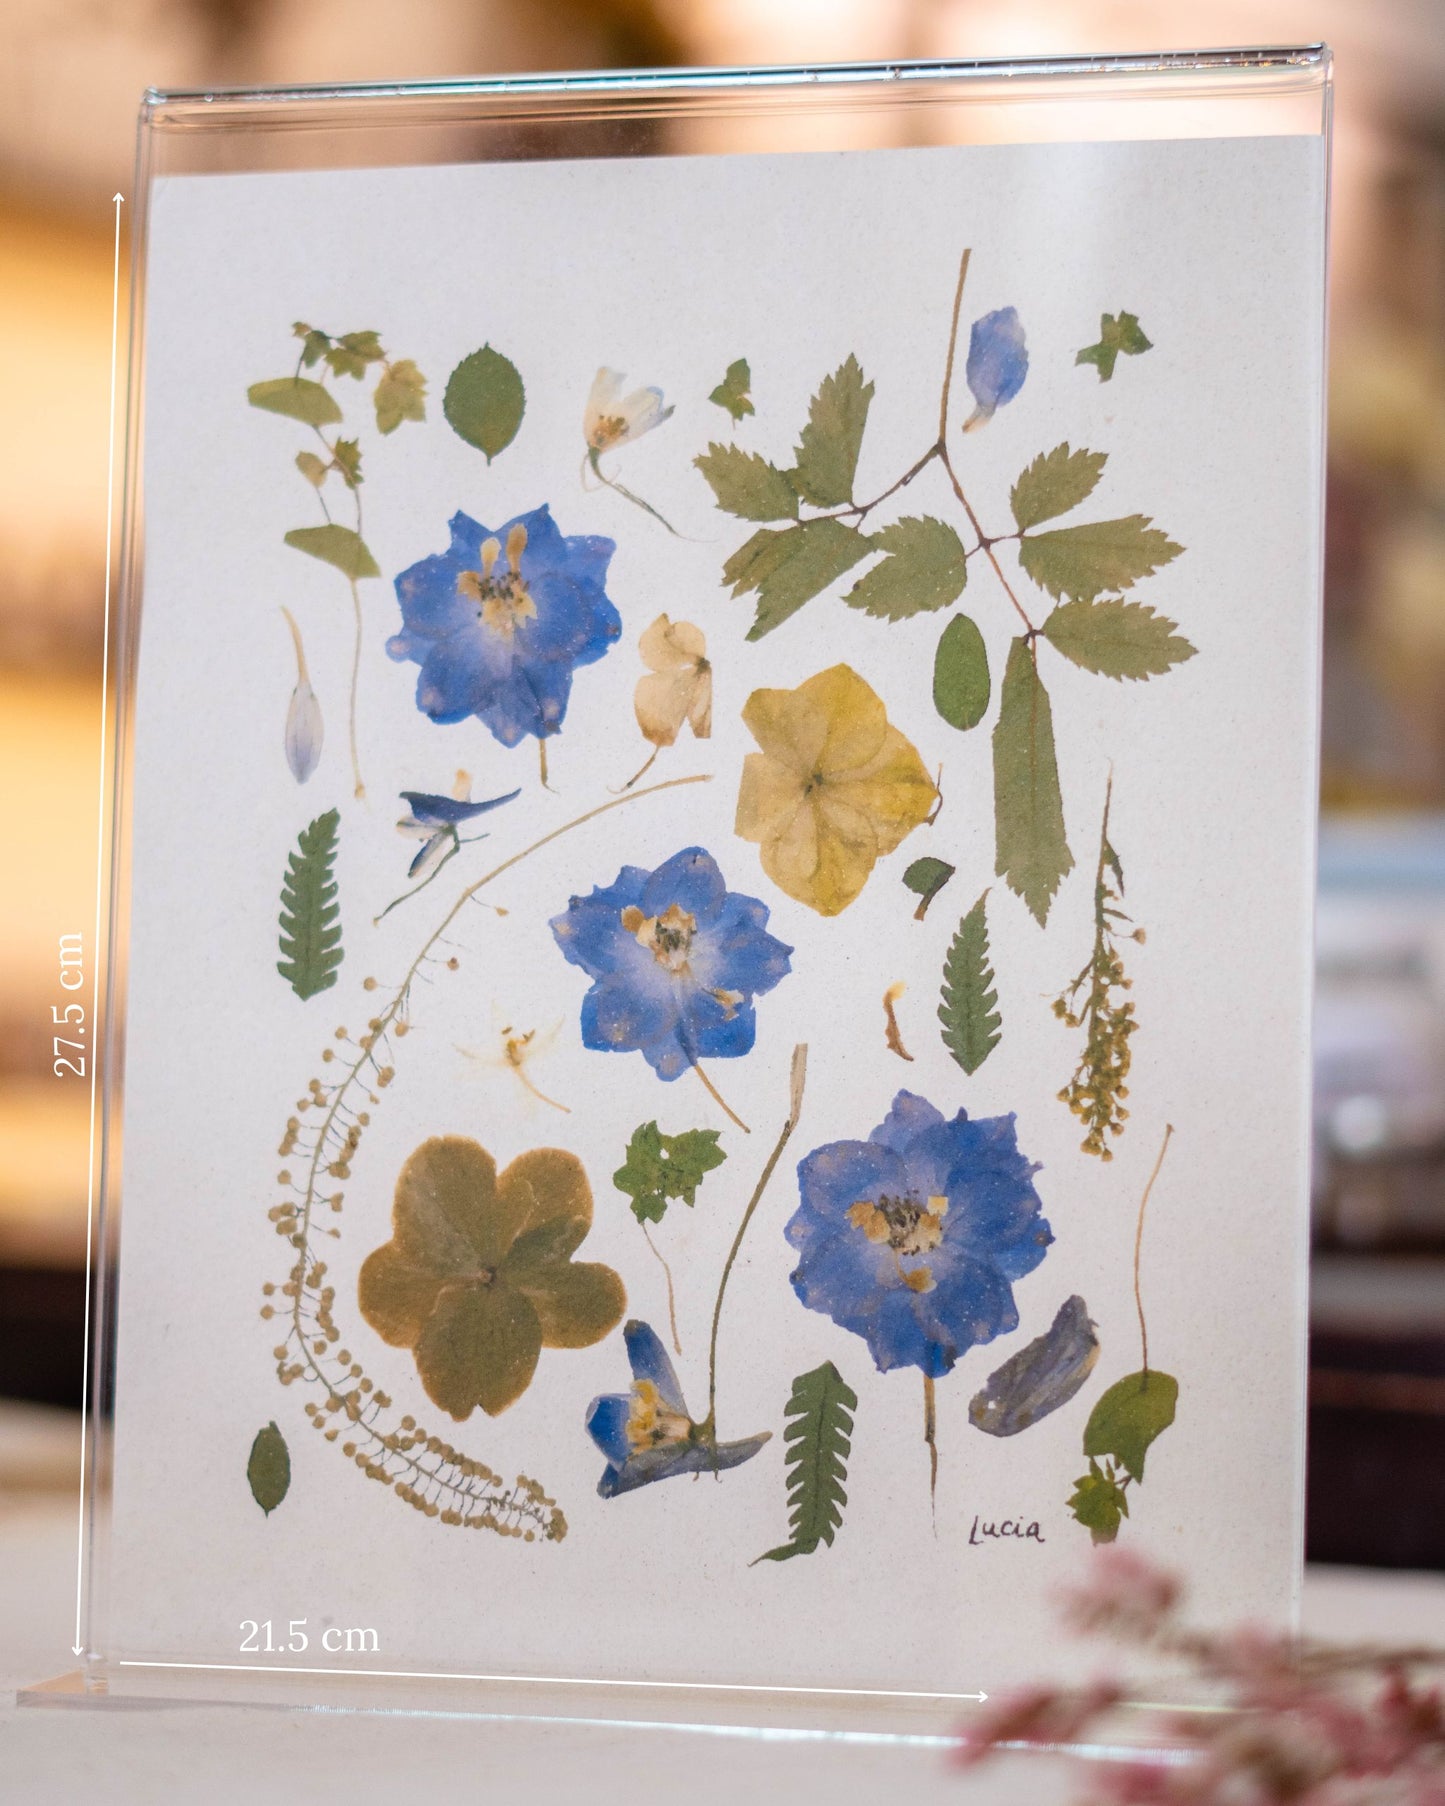 Prints de collage de flores colombianas prensadas autografiadas por la artista, con flores azules.